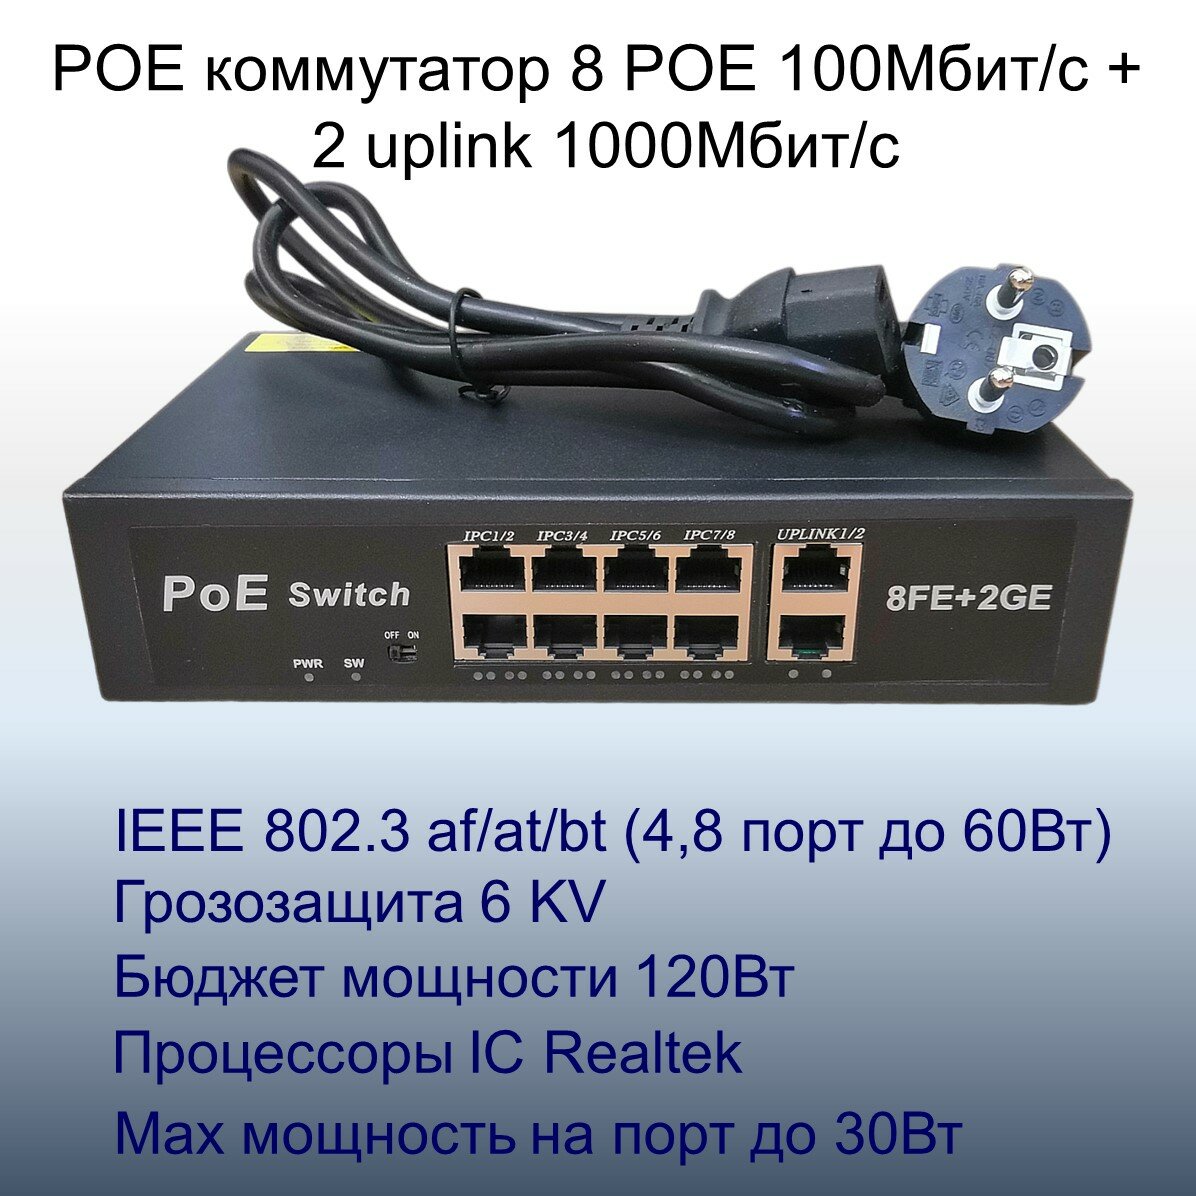 Коммутатор POE свитч с 8POE 100Мбит/с+2Uplink 1Гбит/с портов, бюджет 120Вт, грозозащита 6KV, поддержка IEEE803.2bt 4 и 8 порт до 60Вт